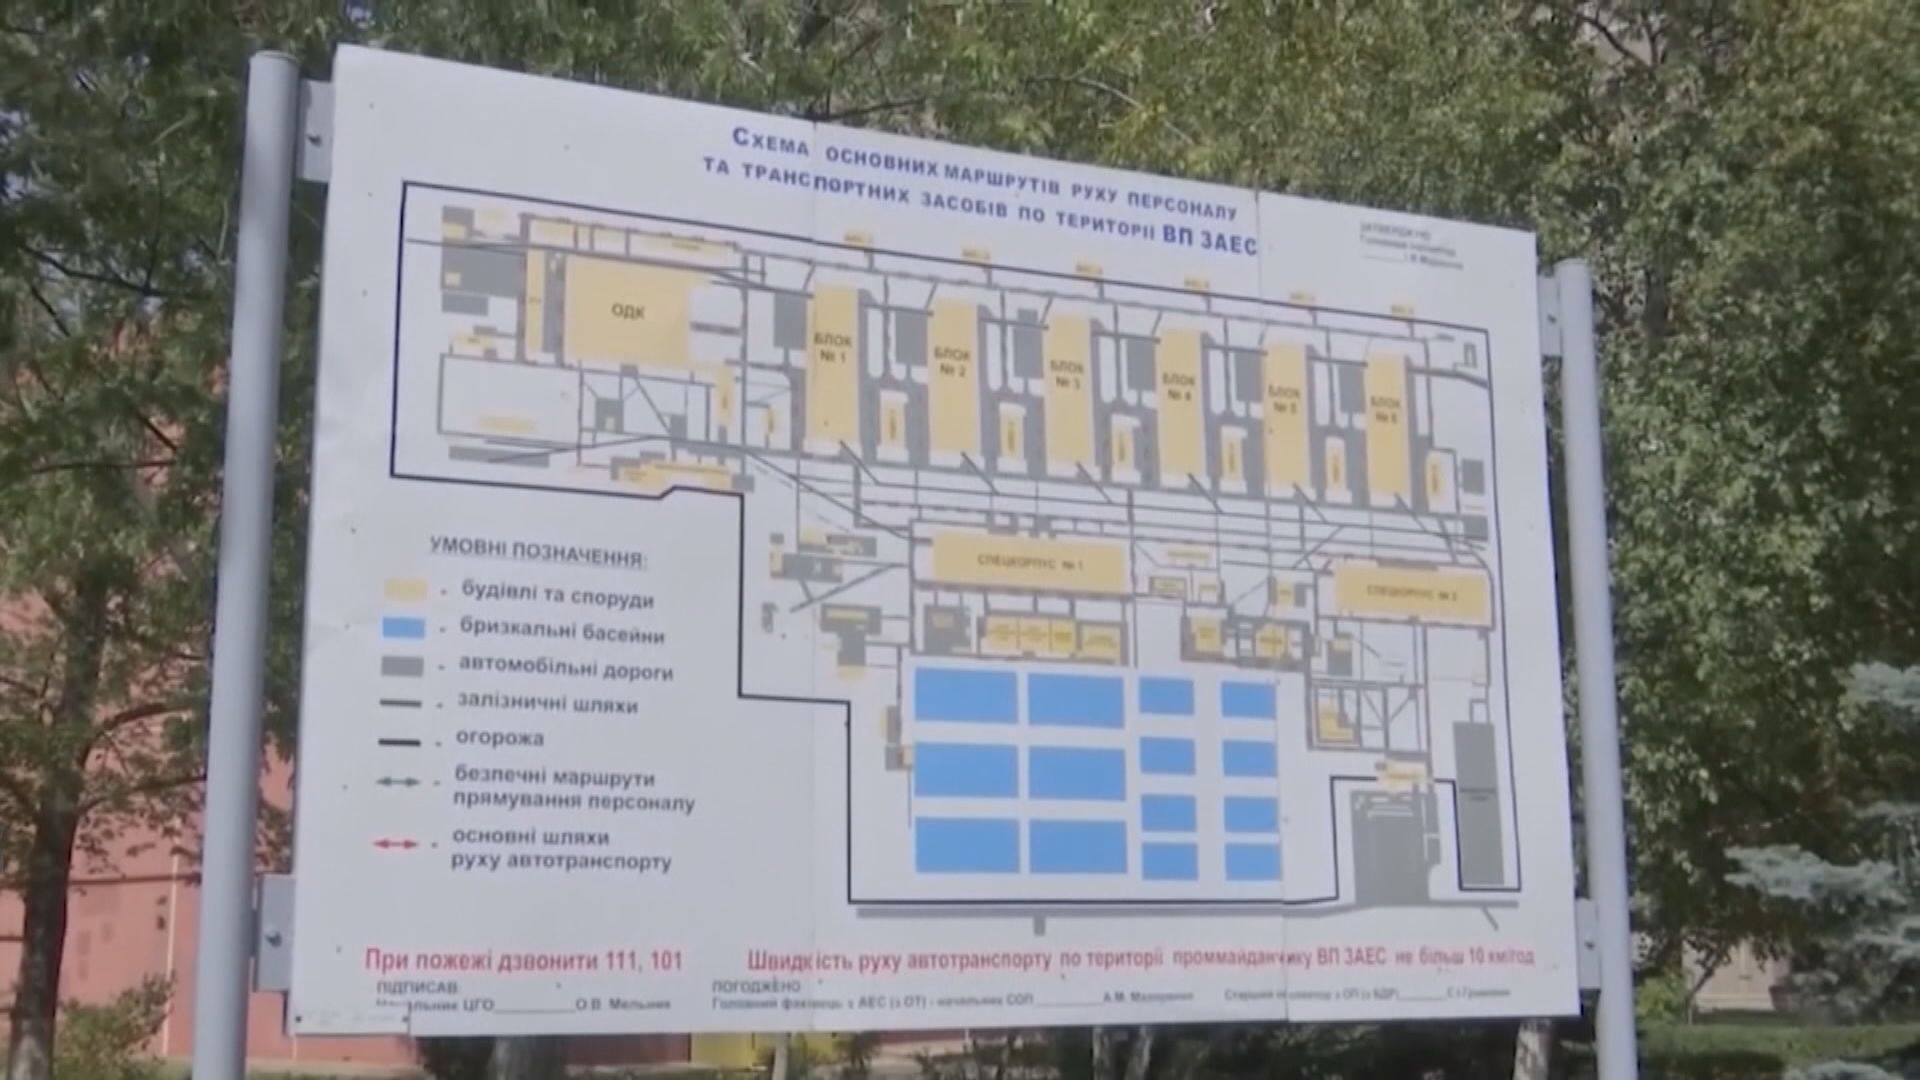 烏克蘭扎波羅熱核電廠兩度與烏克蘭電網中斷連繫